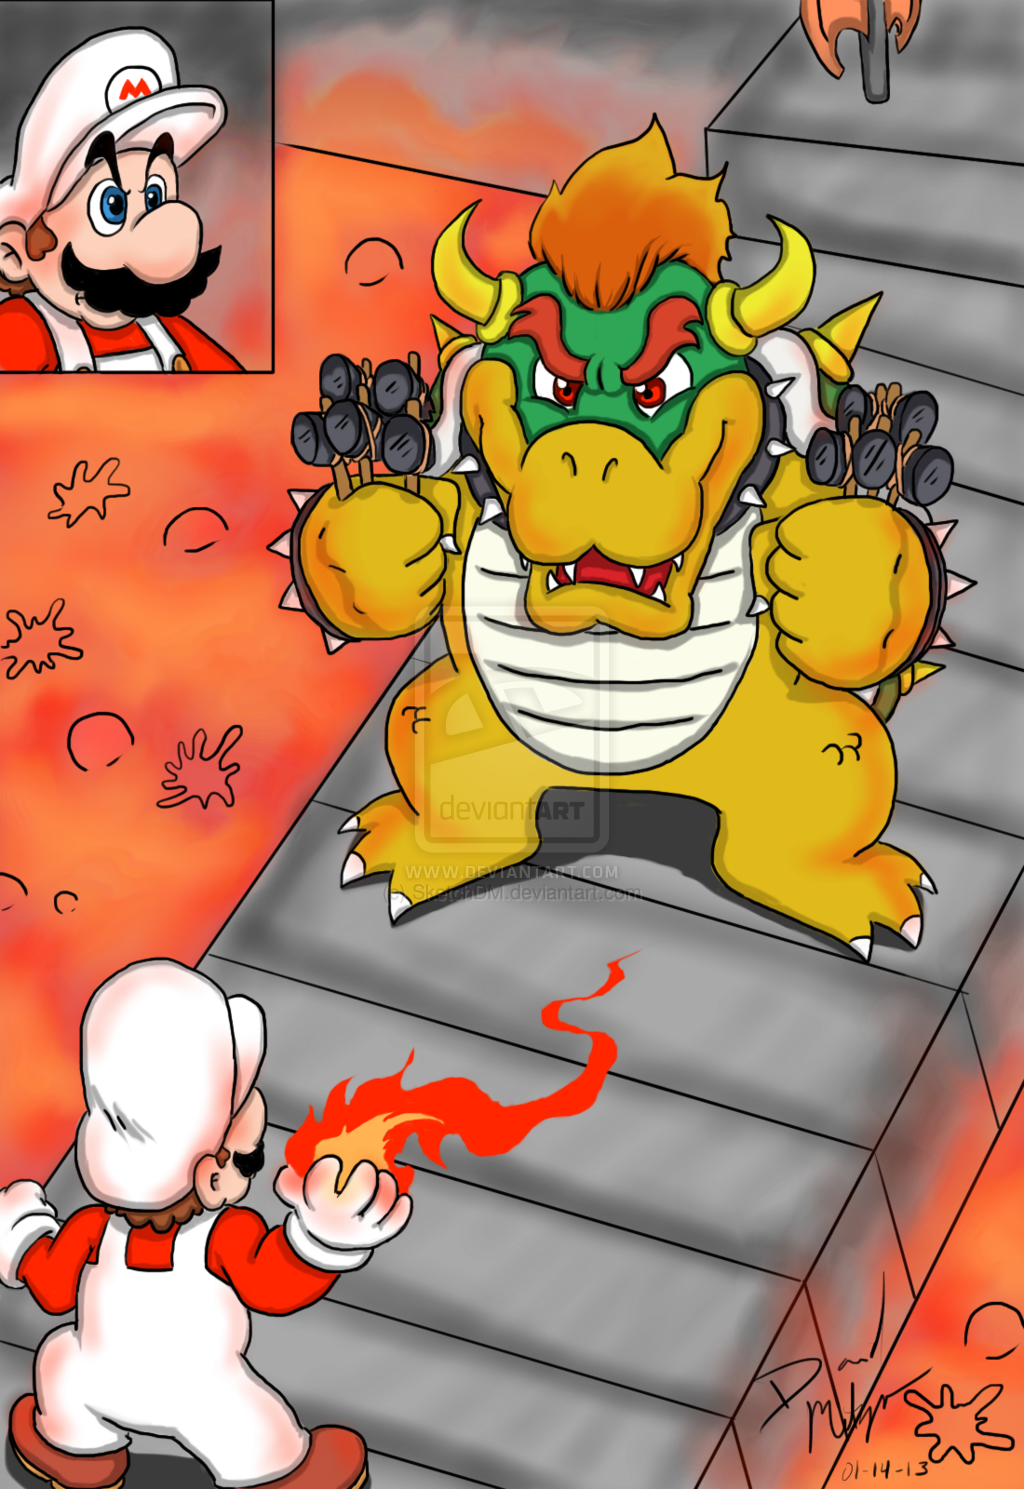 Mario Vs Bowser By SketcHDm